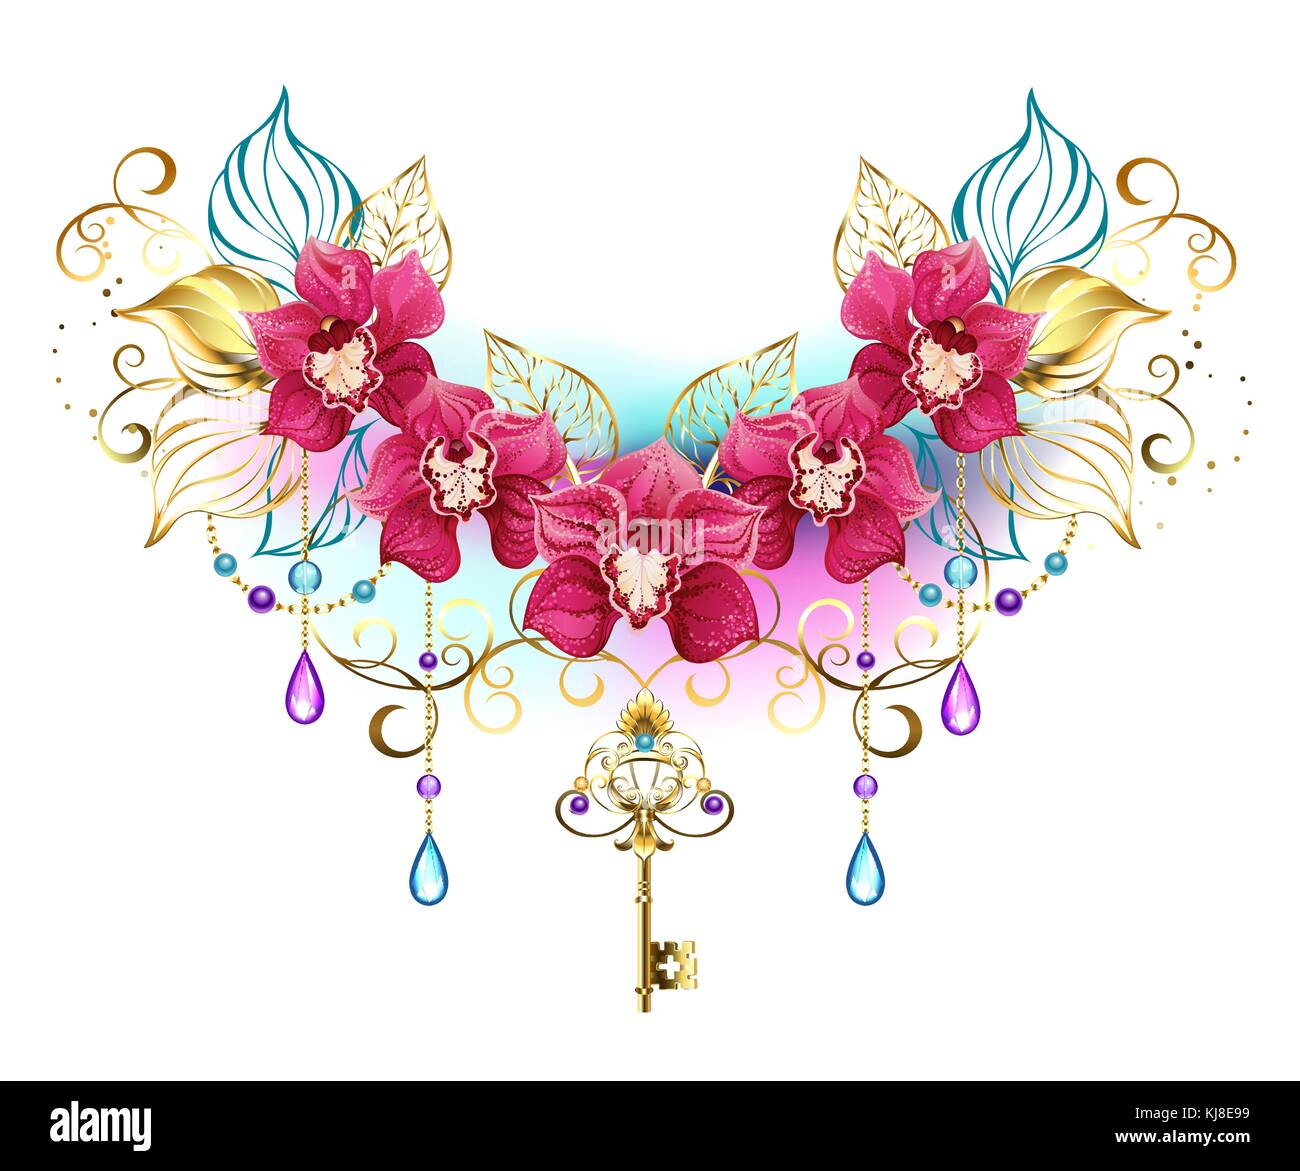 Symmetrische Komposition exotischer rosa Orchideen mit goldenen Blätter und gold Ketten, mit Lila und Türkis Perlen auf einem weißen Hintergrund eingerichtet. pi Stock Vektor